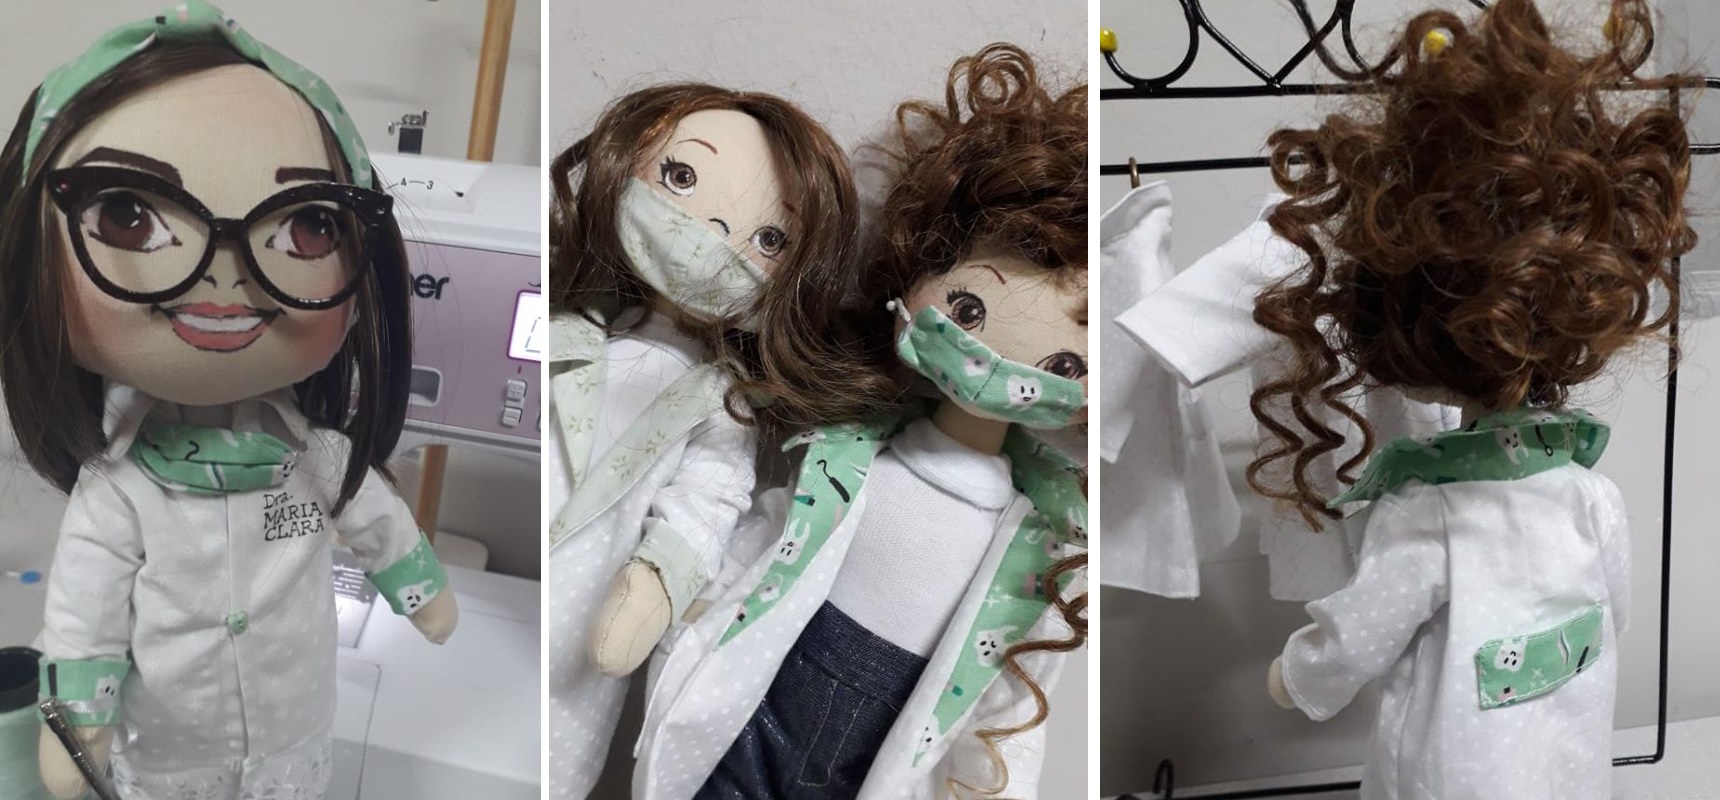  Criatividade marca artesanato local em bonecas médicas e enfermeiras personalizadas